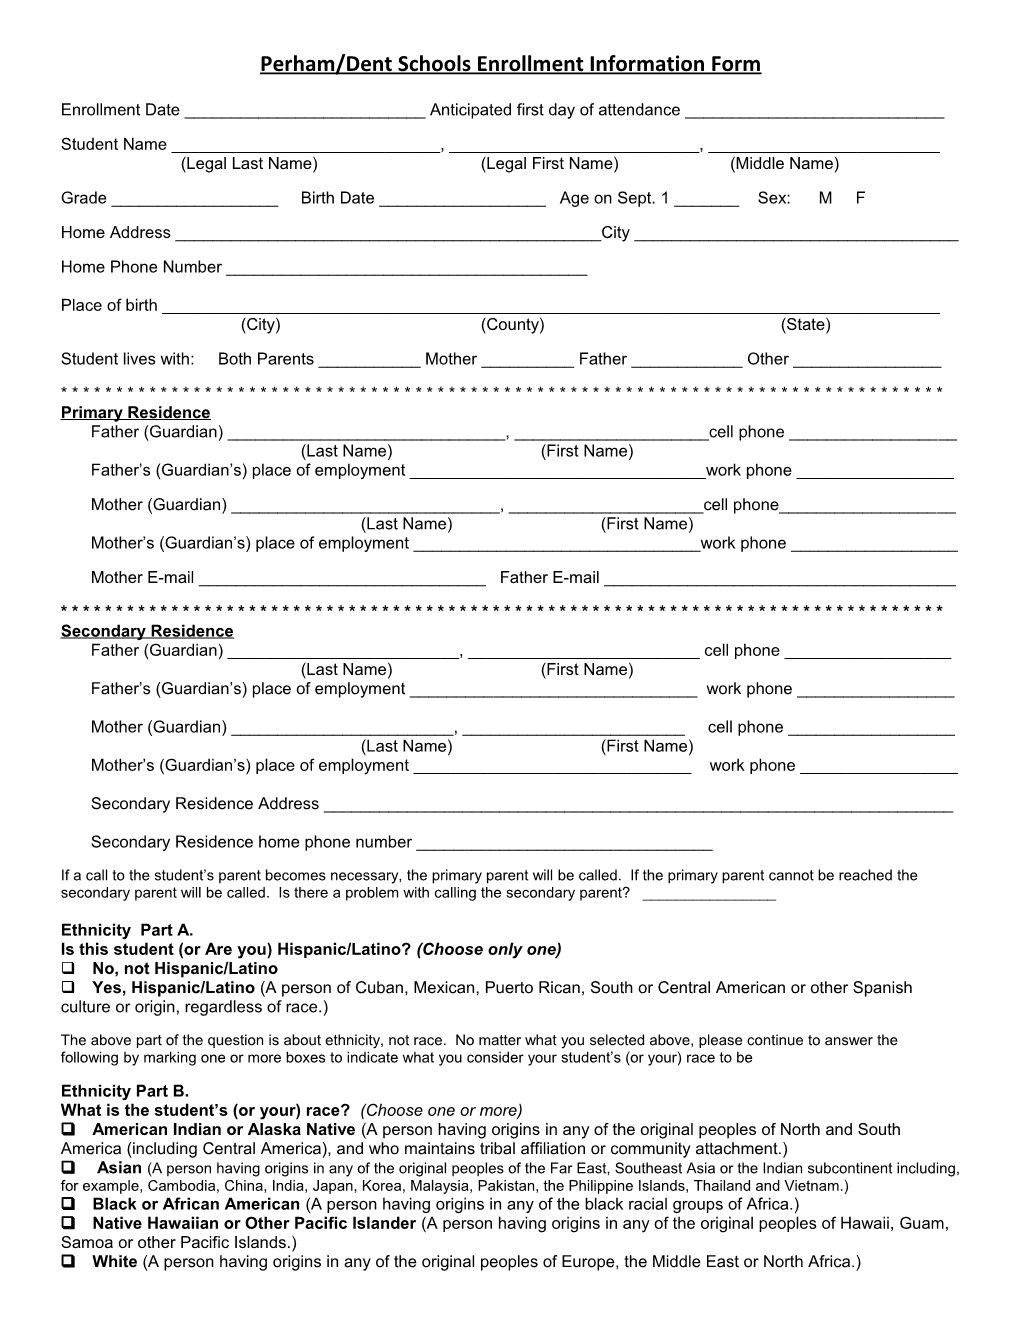 Perham/Dent Schools Enrollment Information Form